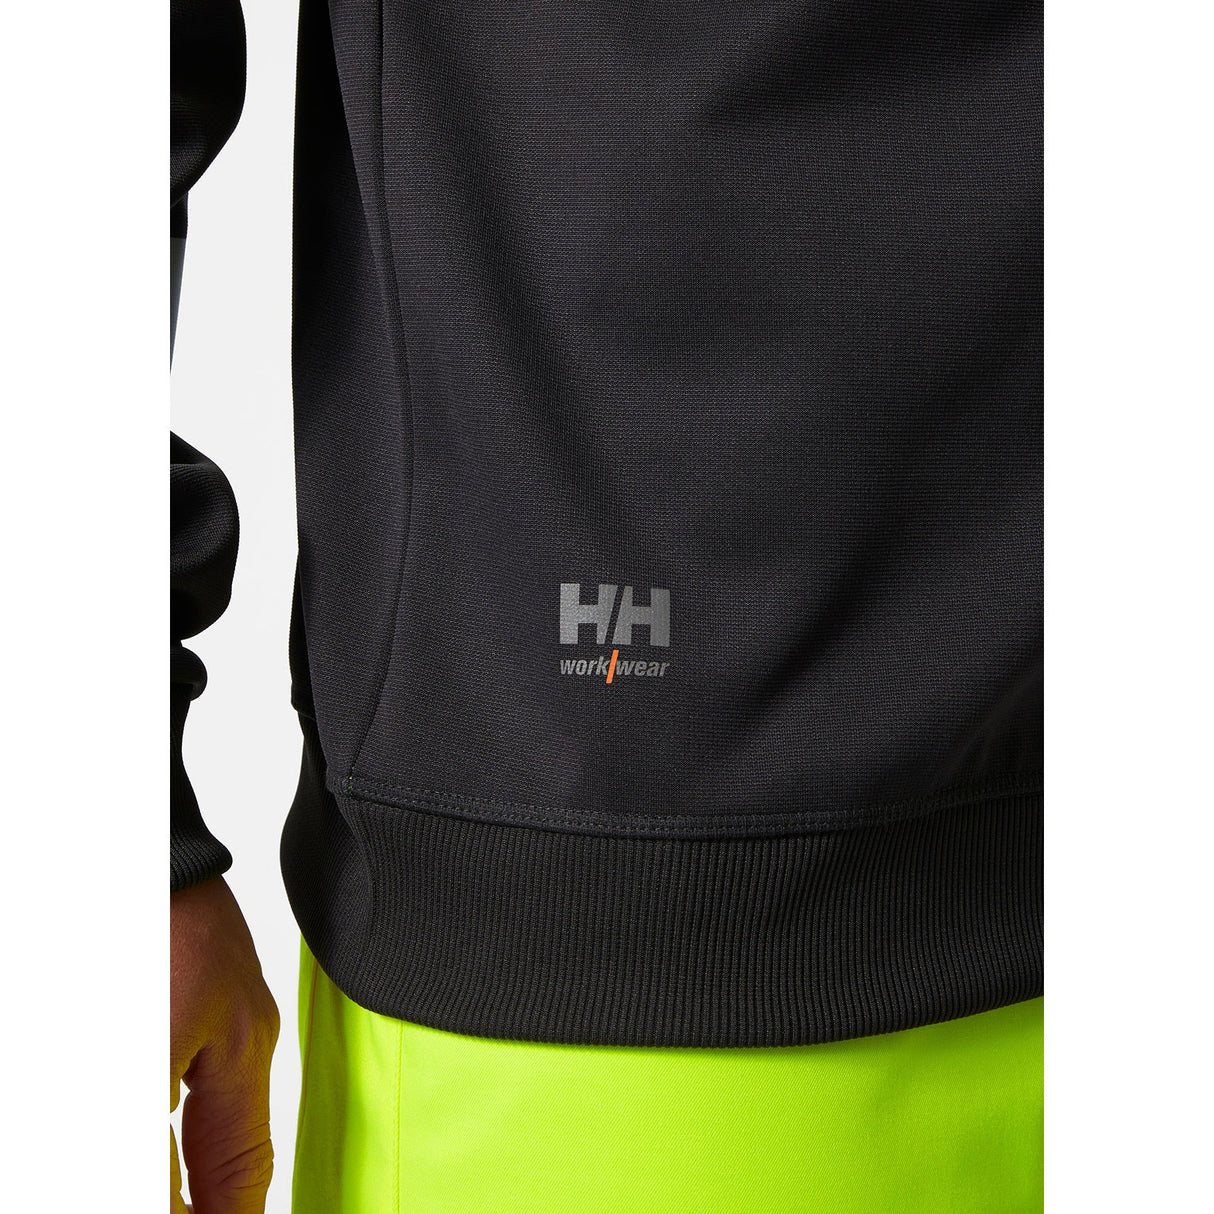 Helly Hansen Workwear Addvis Sweatshirt Class 1